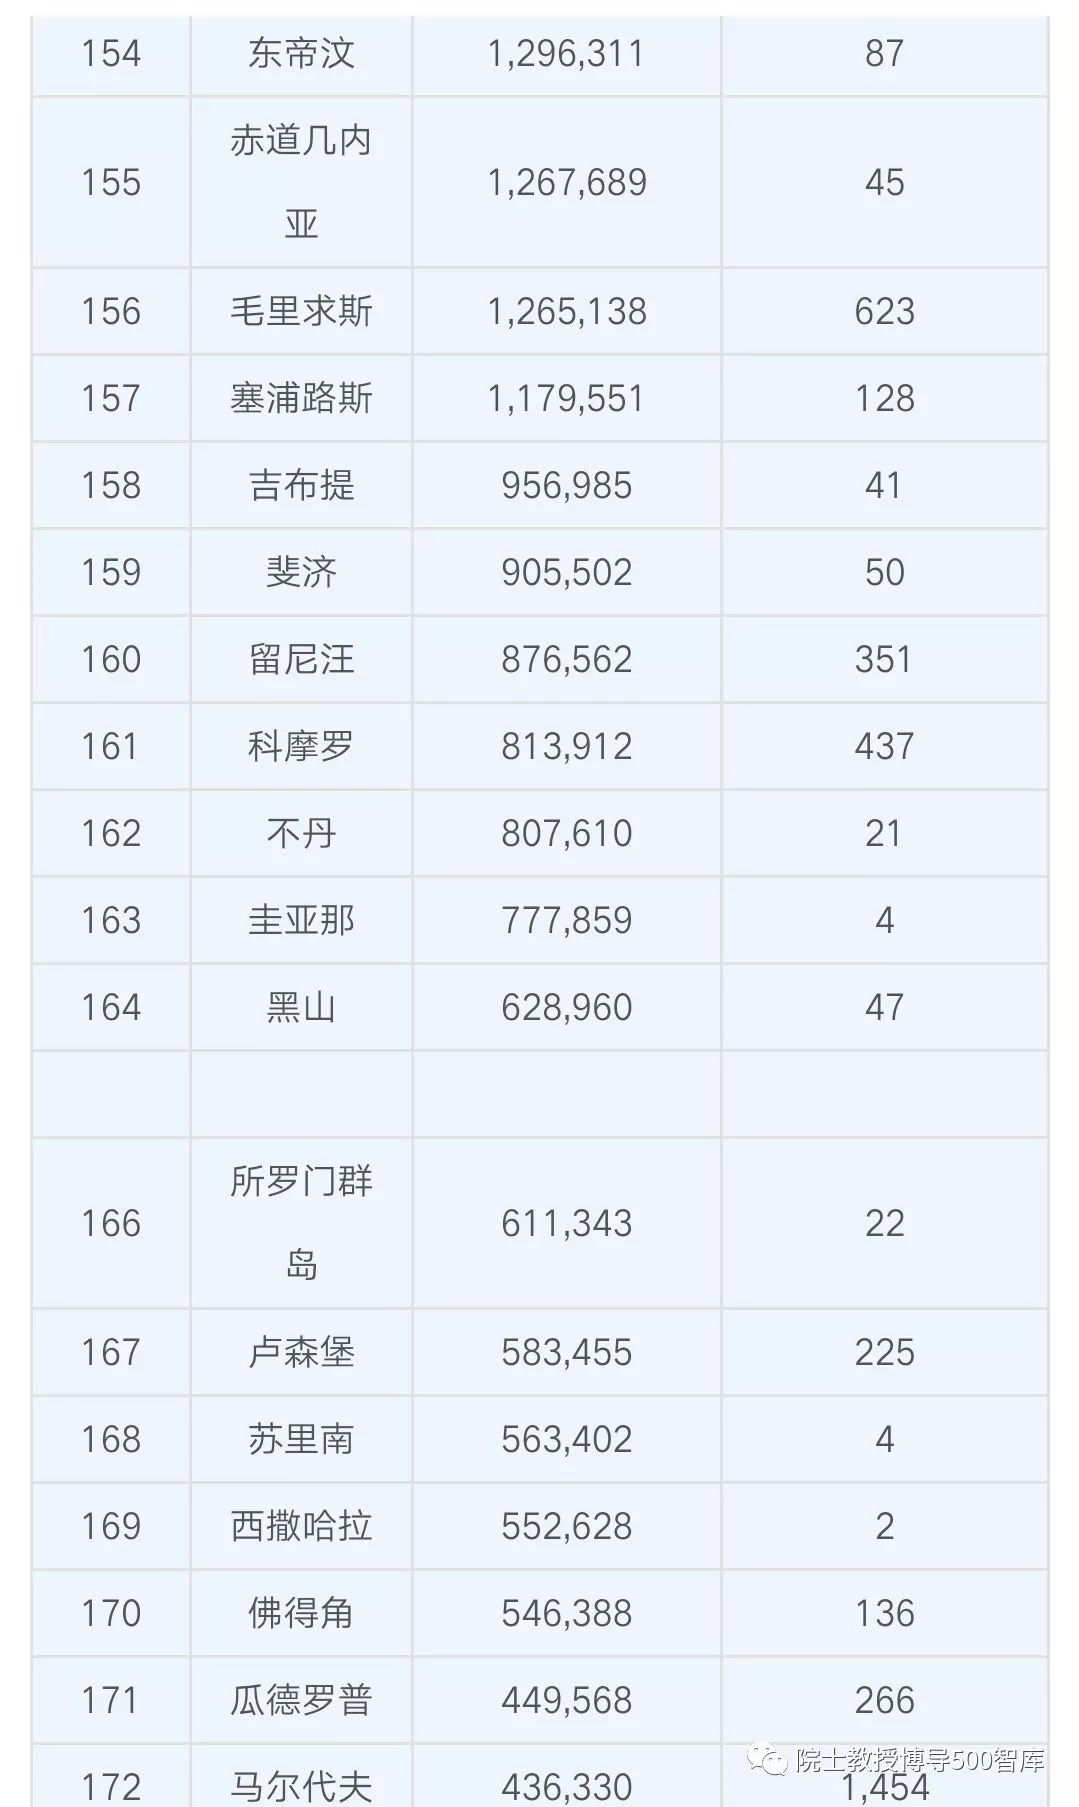 中国人口数量世界排名_2016中国各大城市人口数量排名一览